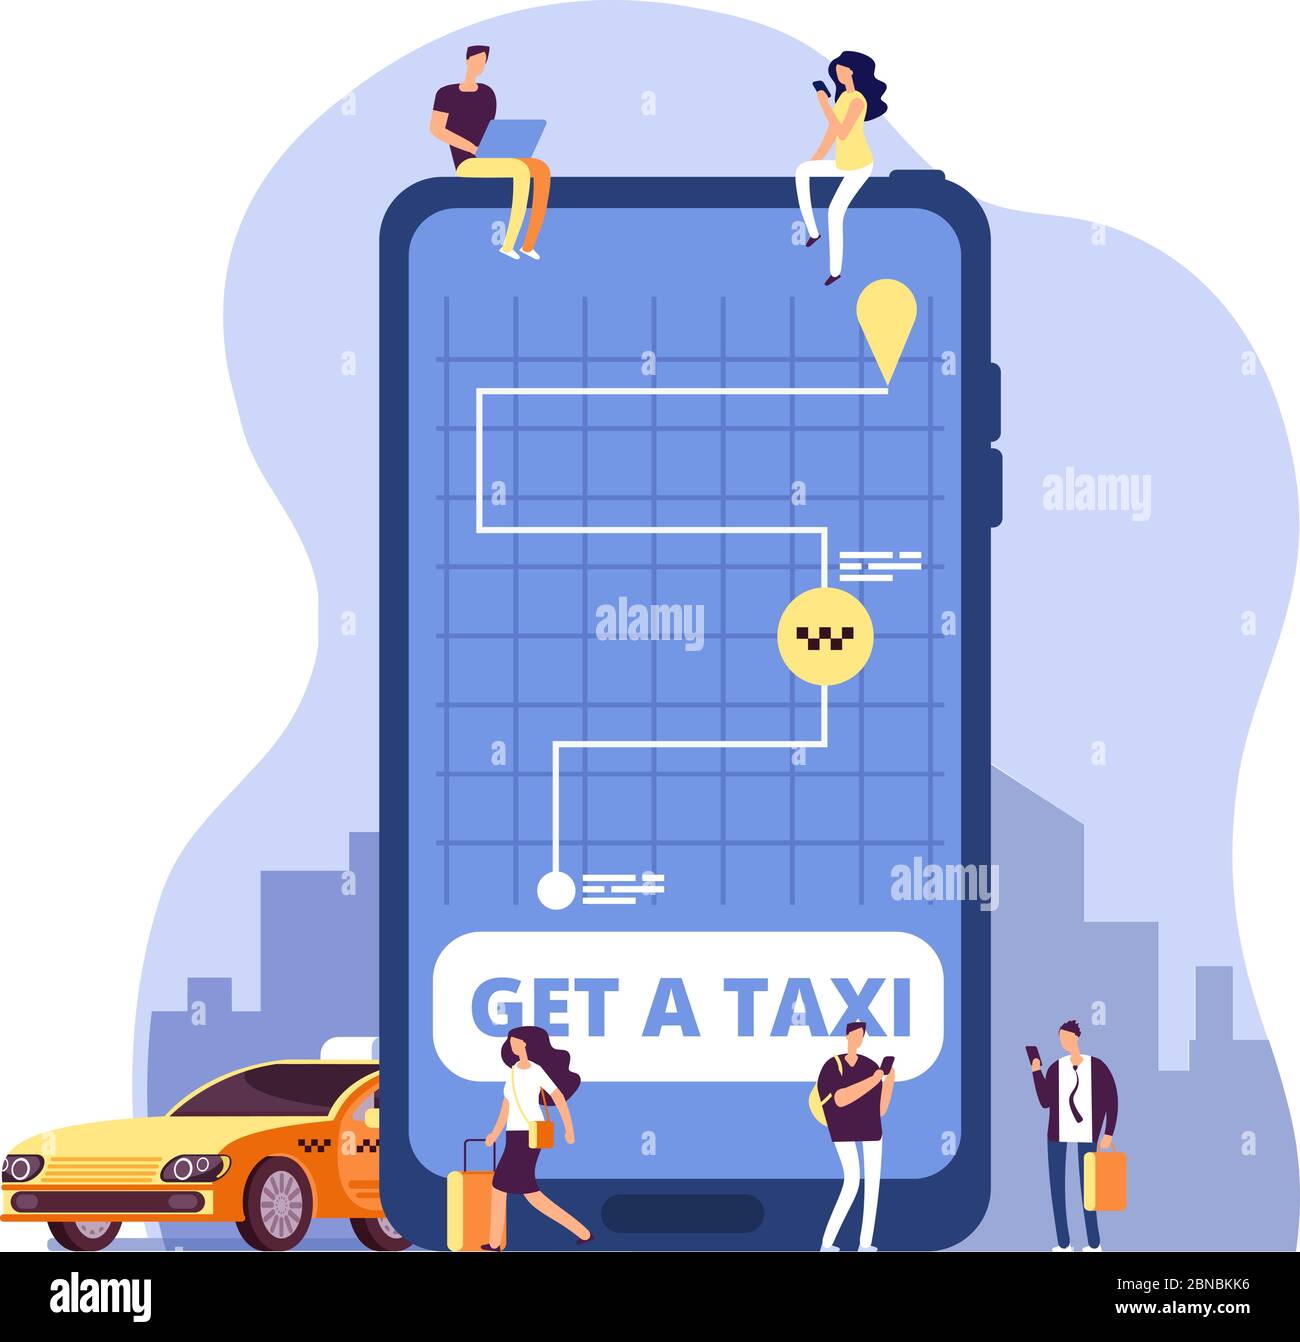 Taxi mobile. Service de taxi en ligne et paiement avec l'application pour smartphone. Les personnes qui commandent un taxi sur un énorme téléphone portable. Vecteur concept transport en ligne de taxi, illustration du service mobile d'application Illustration de Vecteur